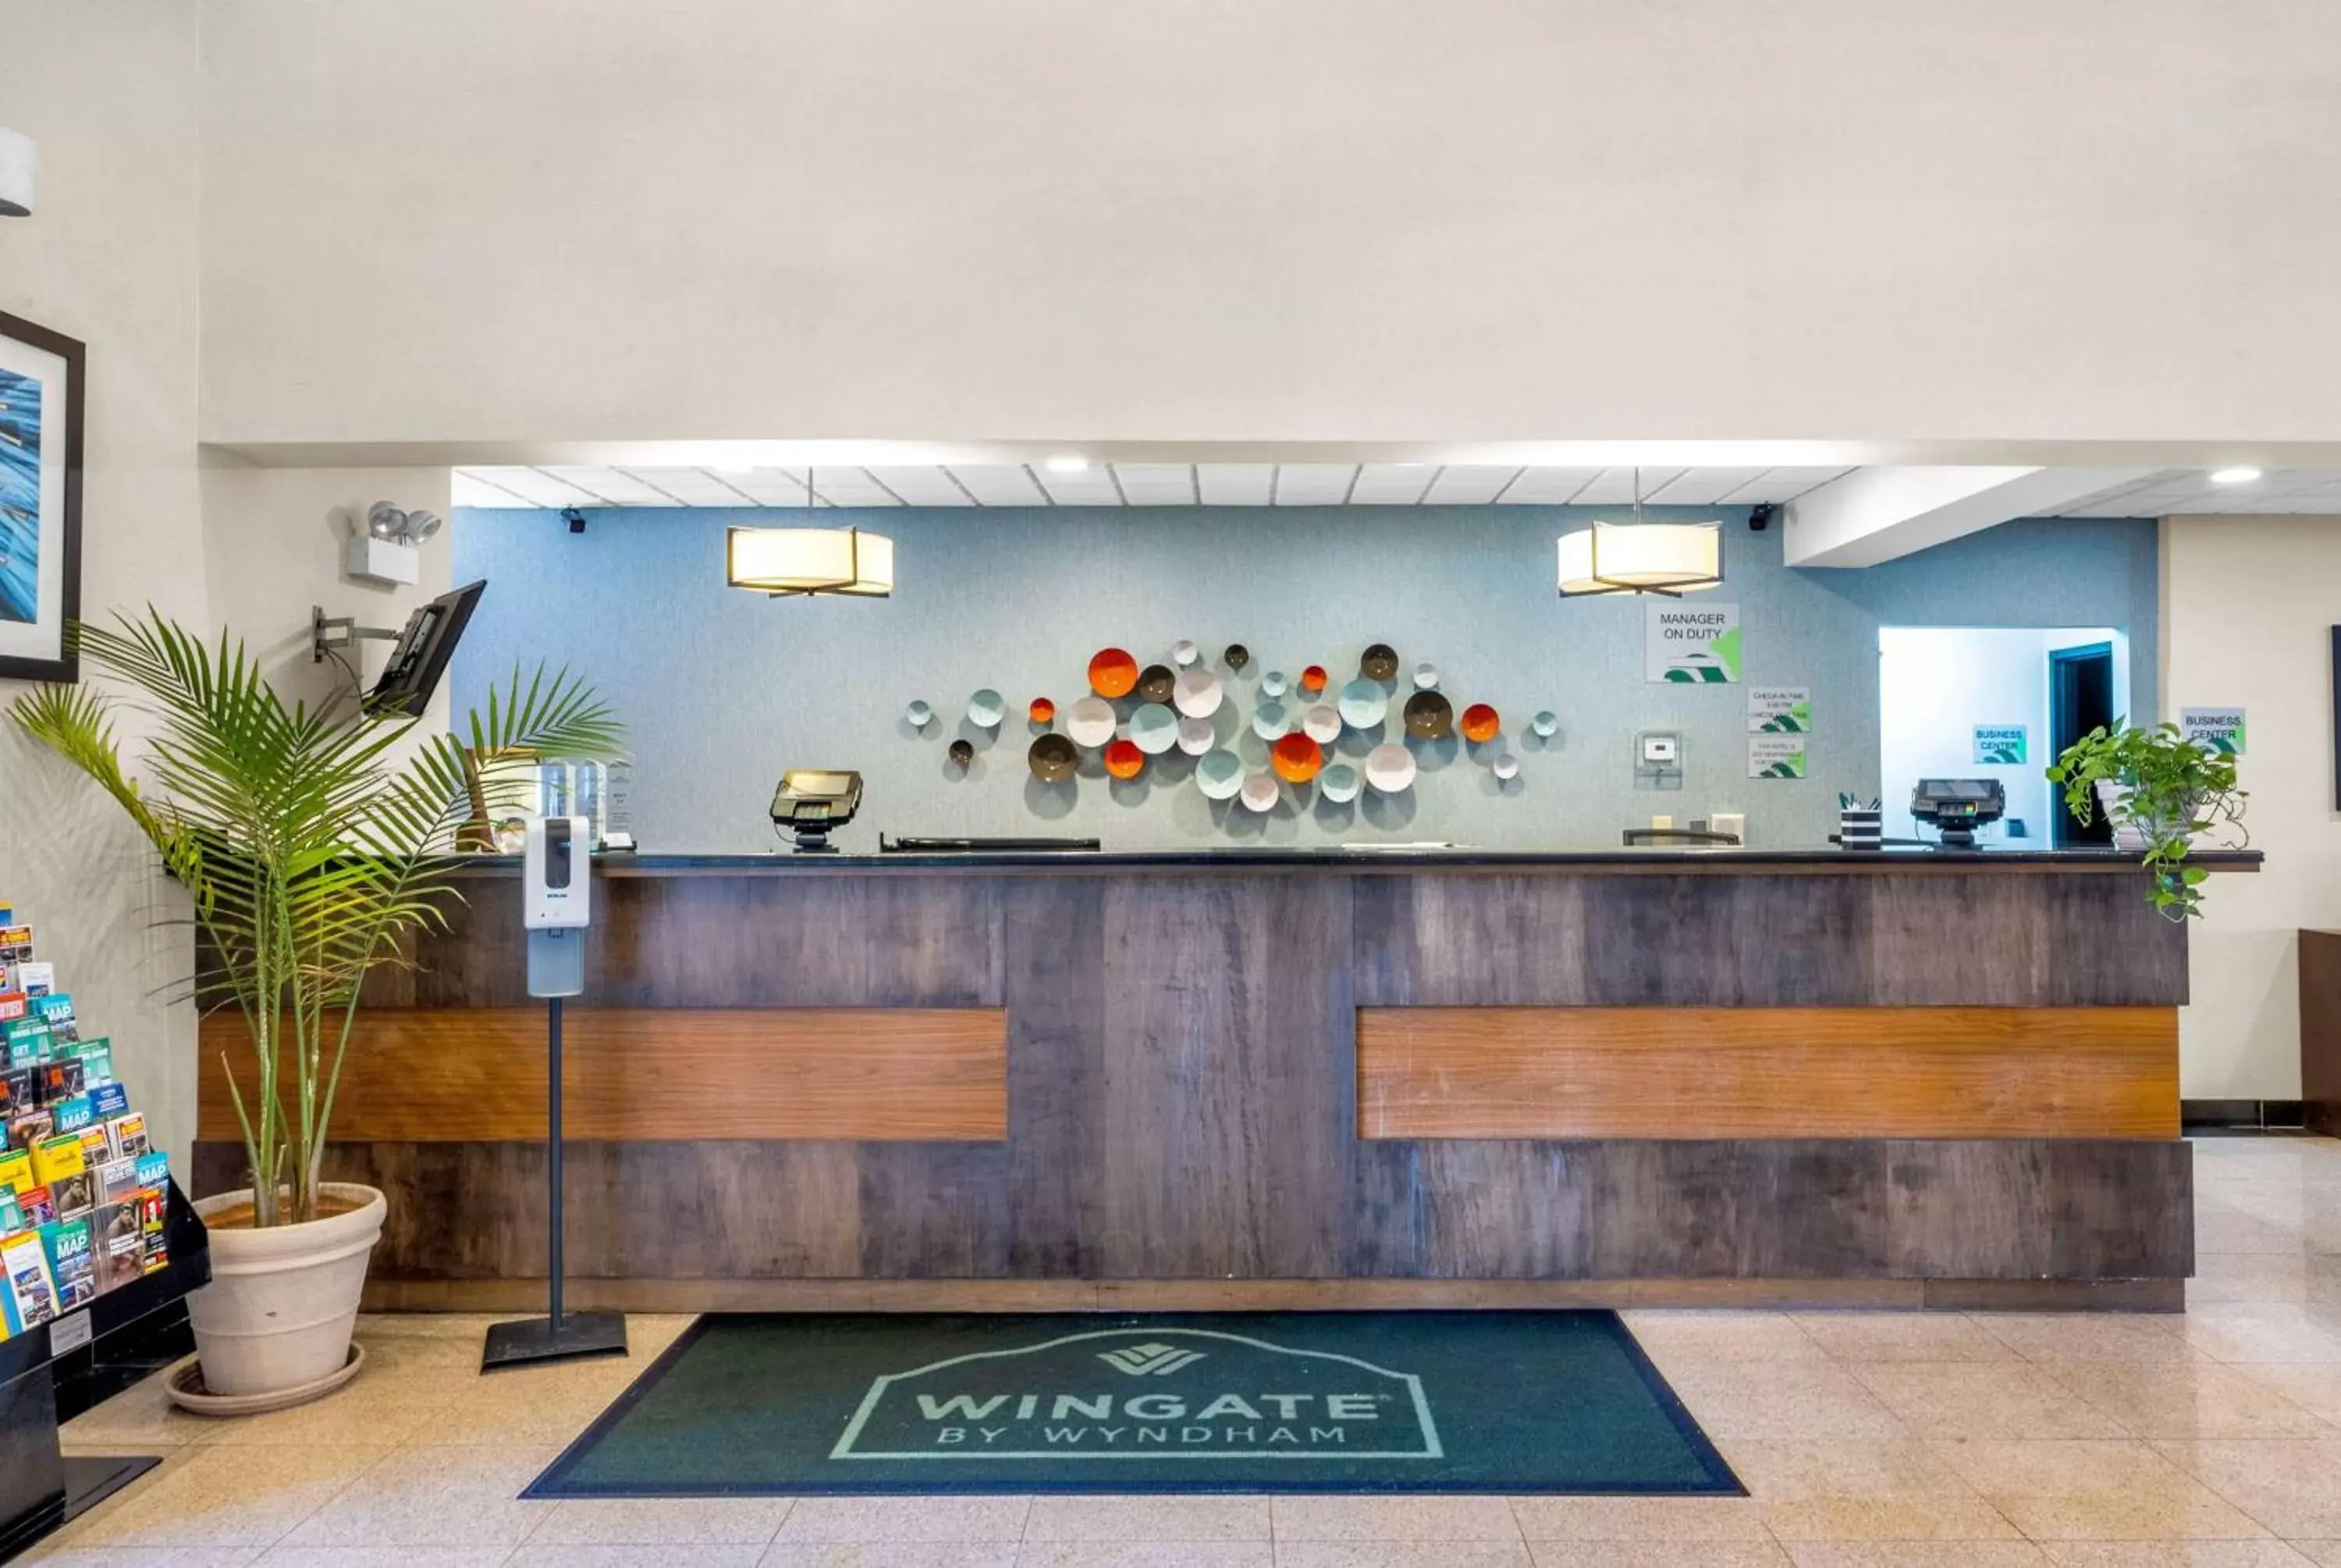 Lobby or reception, Lobby/Reception in Wingate by Wyndham Schaumburg